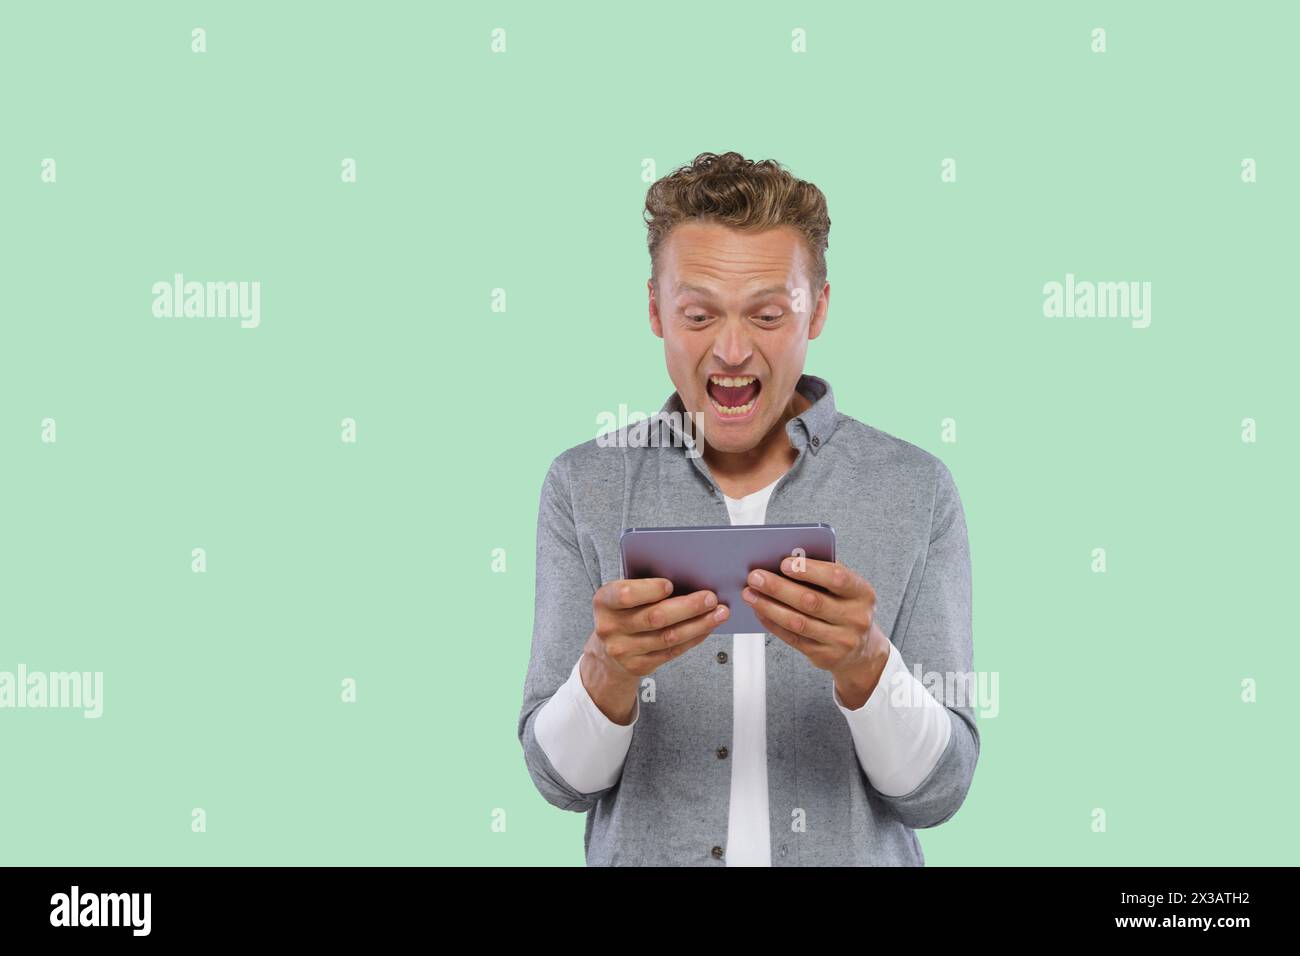 Un homme tient une tablette et la regarde avec une expression surprise. Il joue à un jeu ou regarde quelque chose sur l'écran Banque D'Images